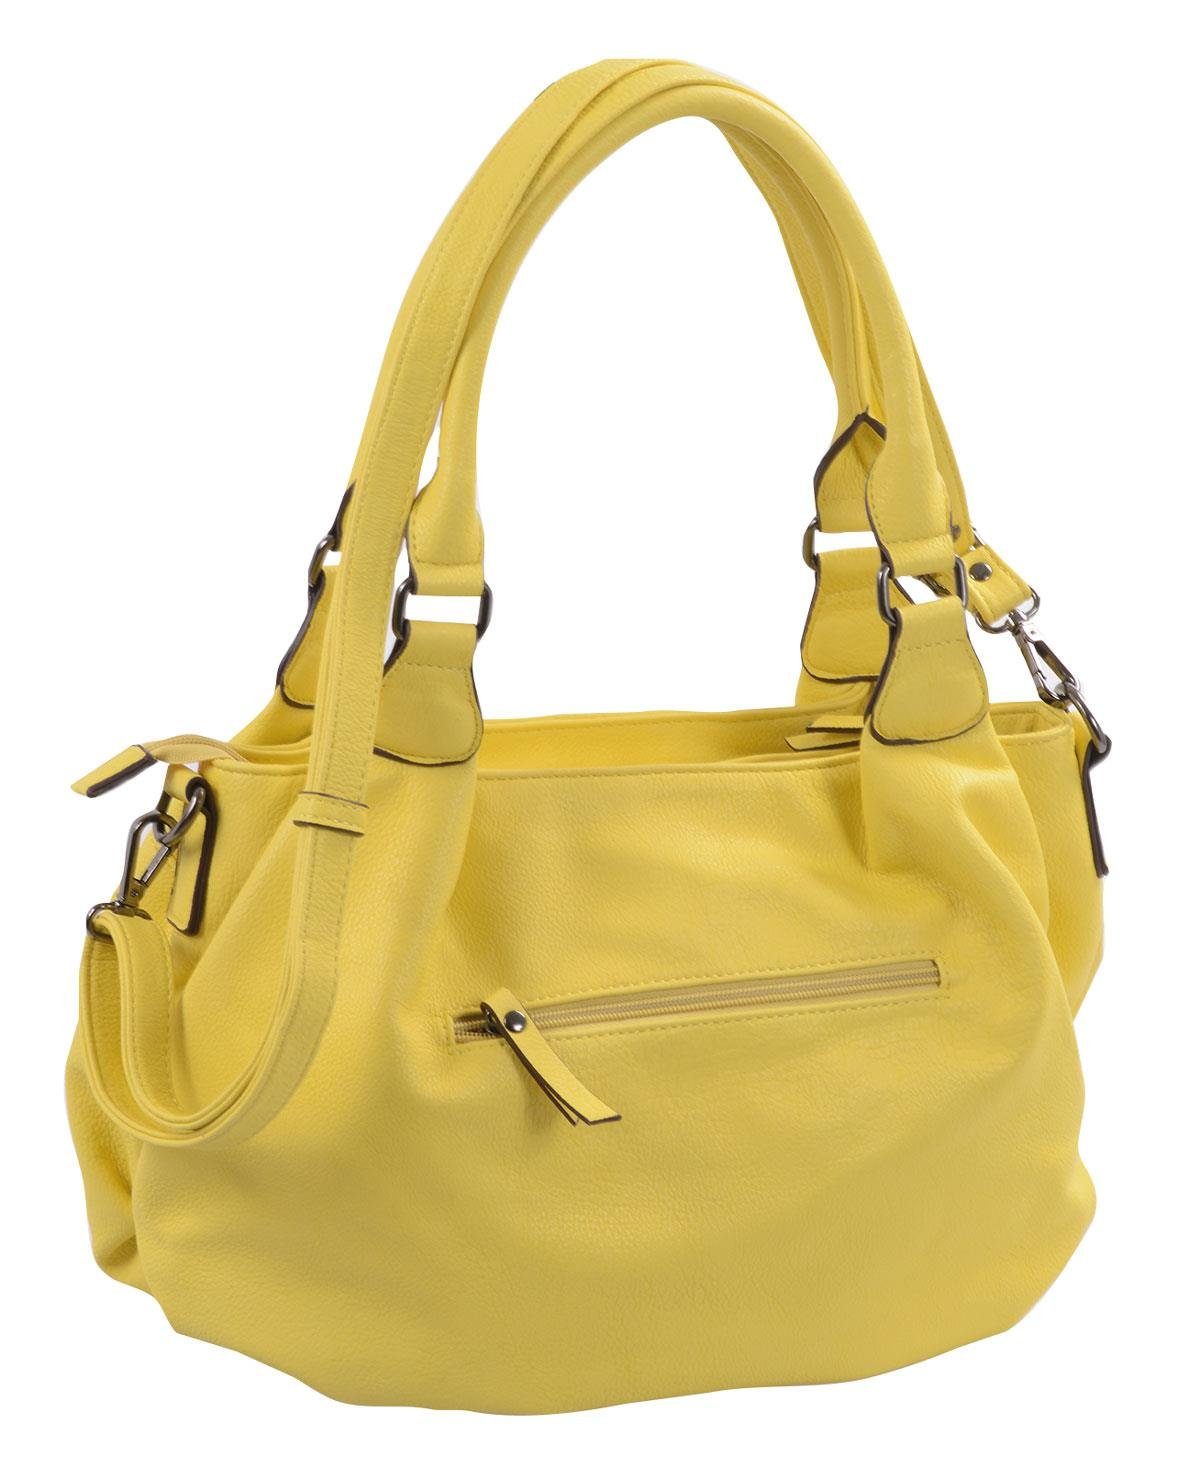 Basic Handtasche knautschige Handtasche mit kurzen und langem Henkel, gelb